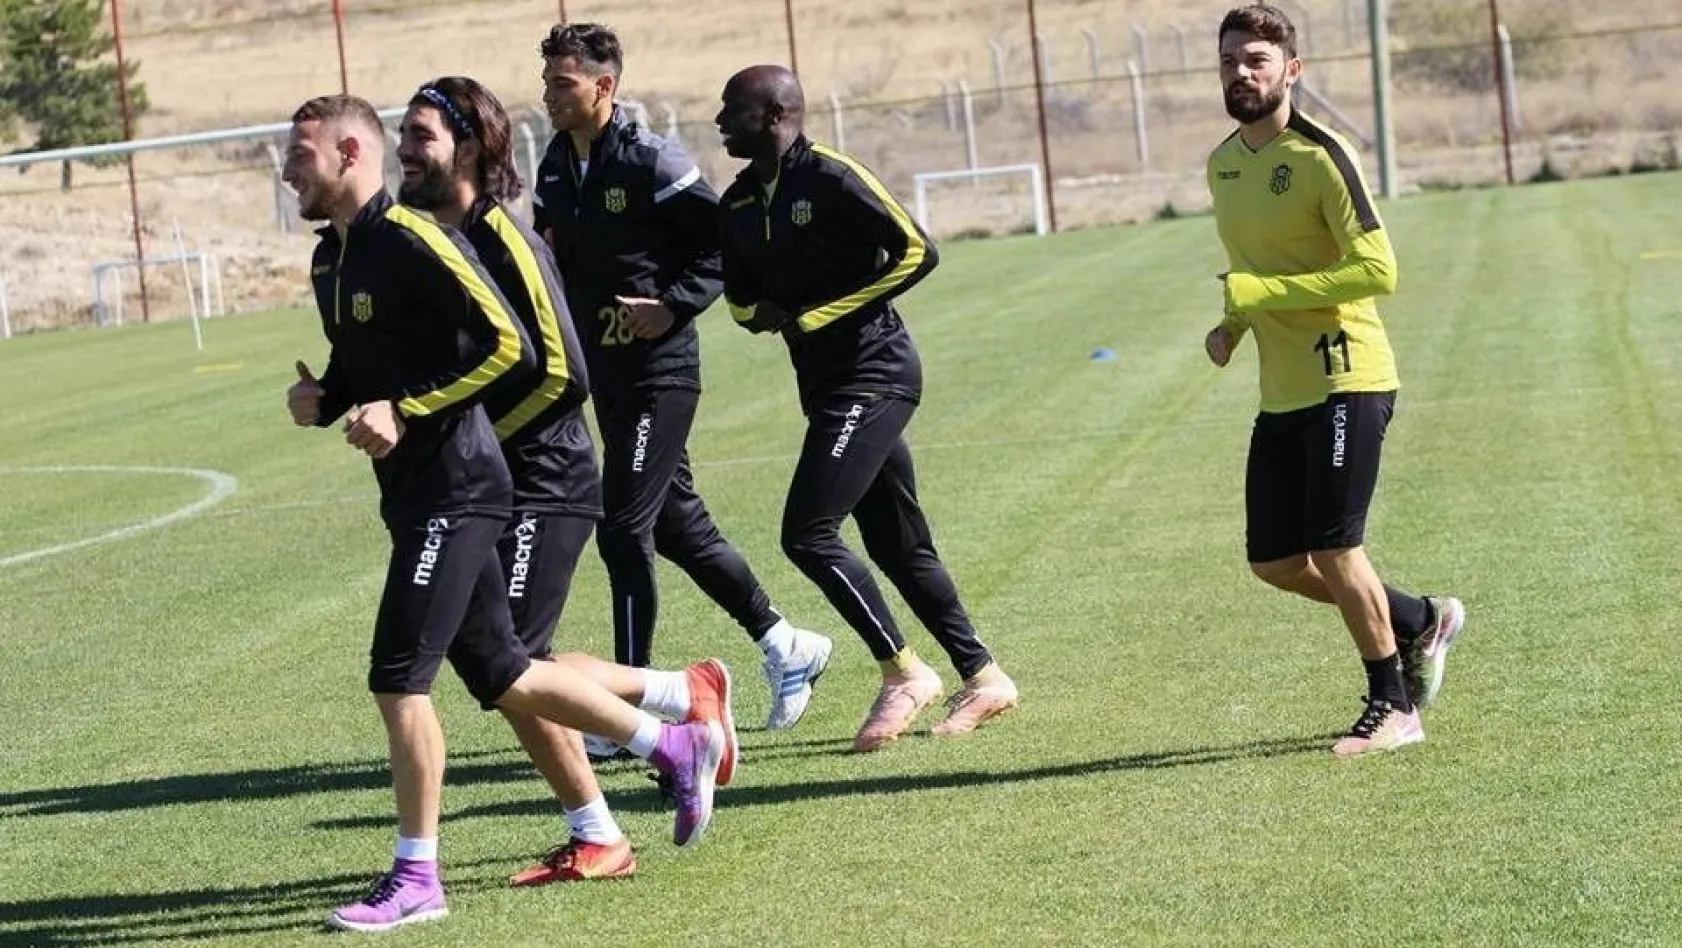 Yeni Malatyaspor, Alanyaspor maçının hazırlıklarını sürdürüyor
